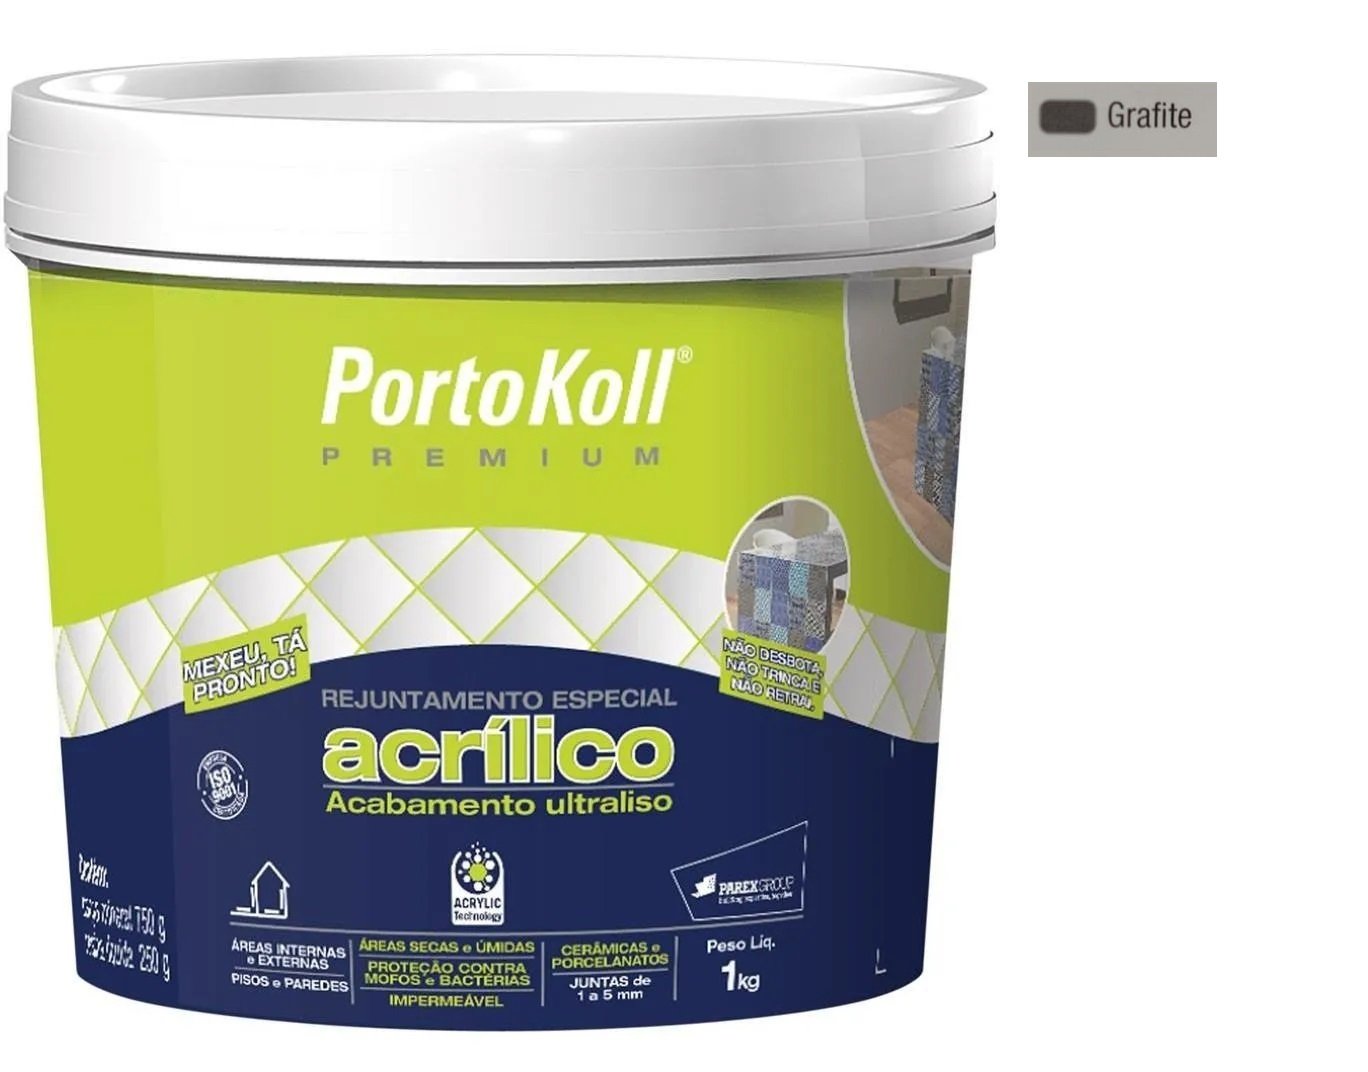 Rejunte Acrílico Portokoll Premium 1kg - GRAFITE - 1